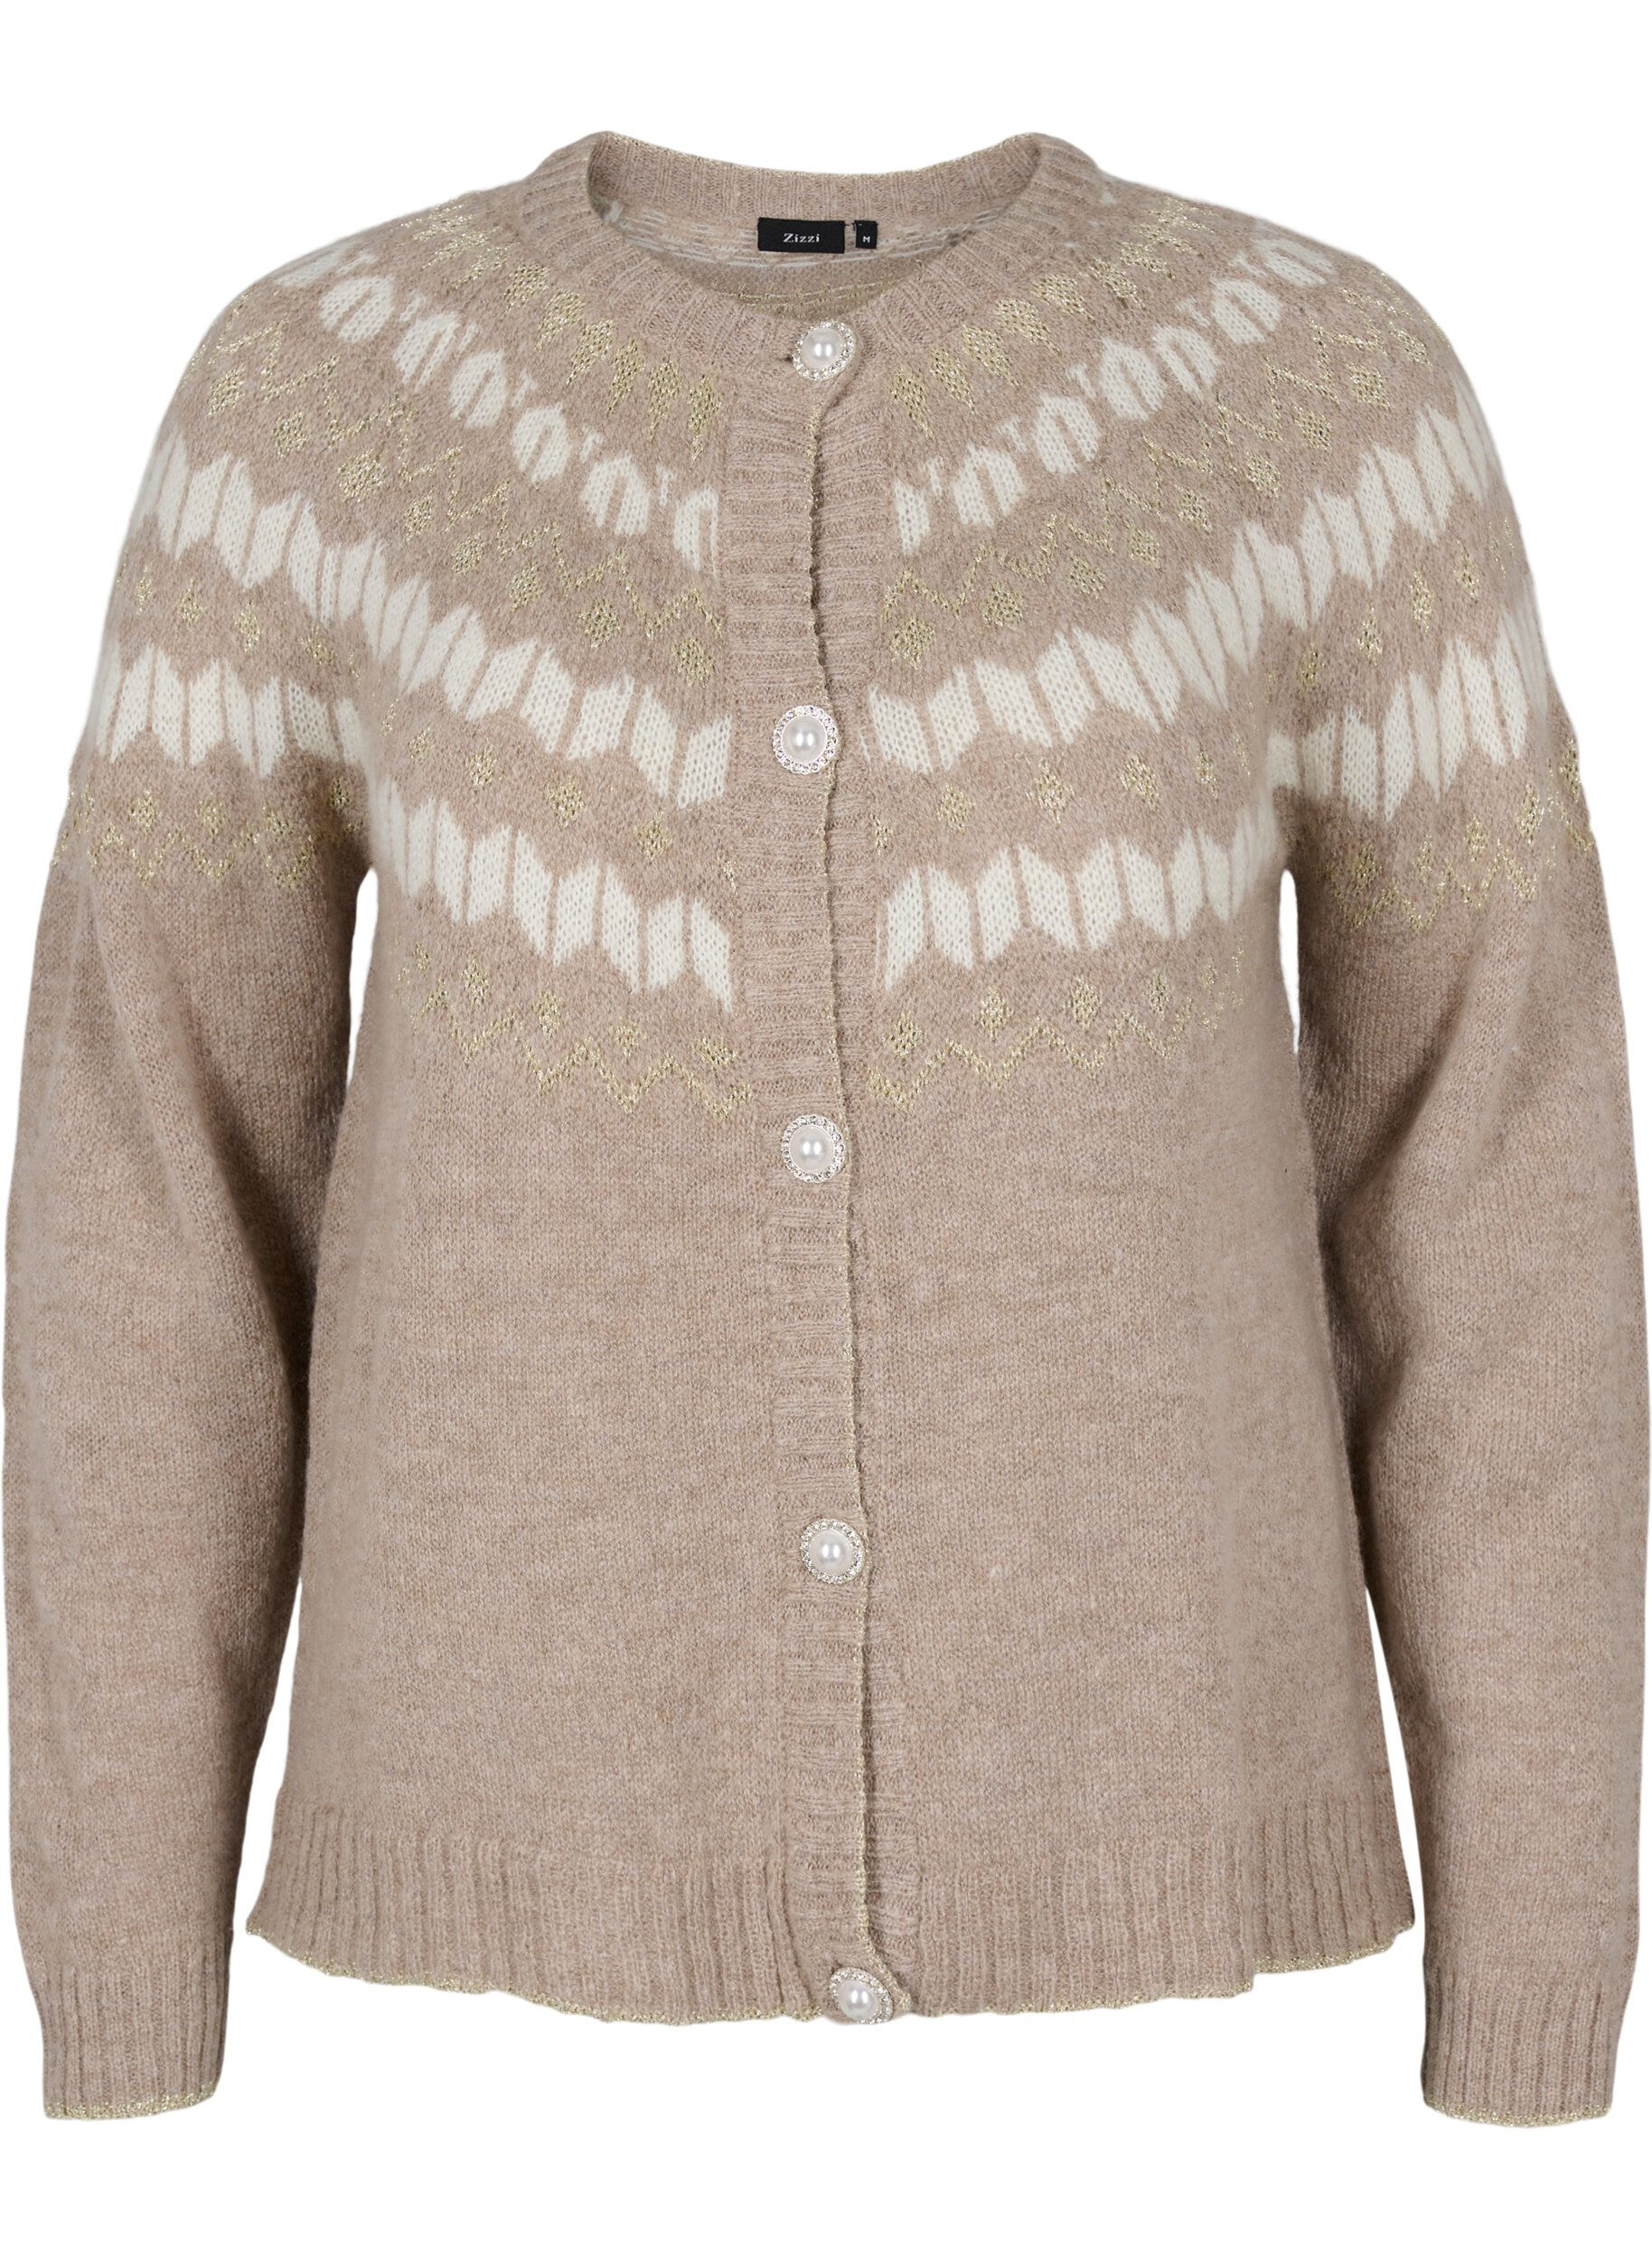 Fashion Knitwear Knitted Cardigan Frapp Knitted Cardigan \u201eW-fsrwxz\u201c light grey 